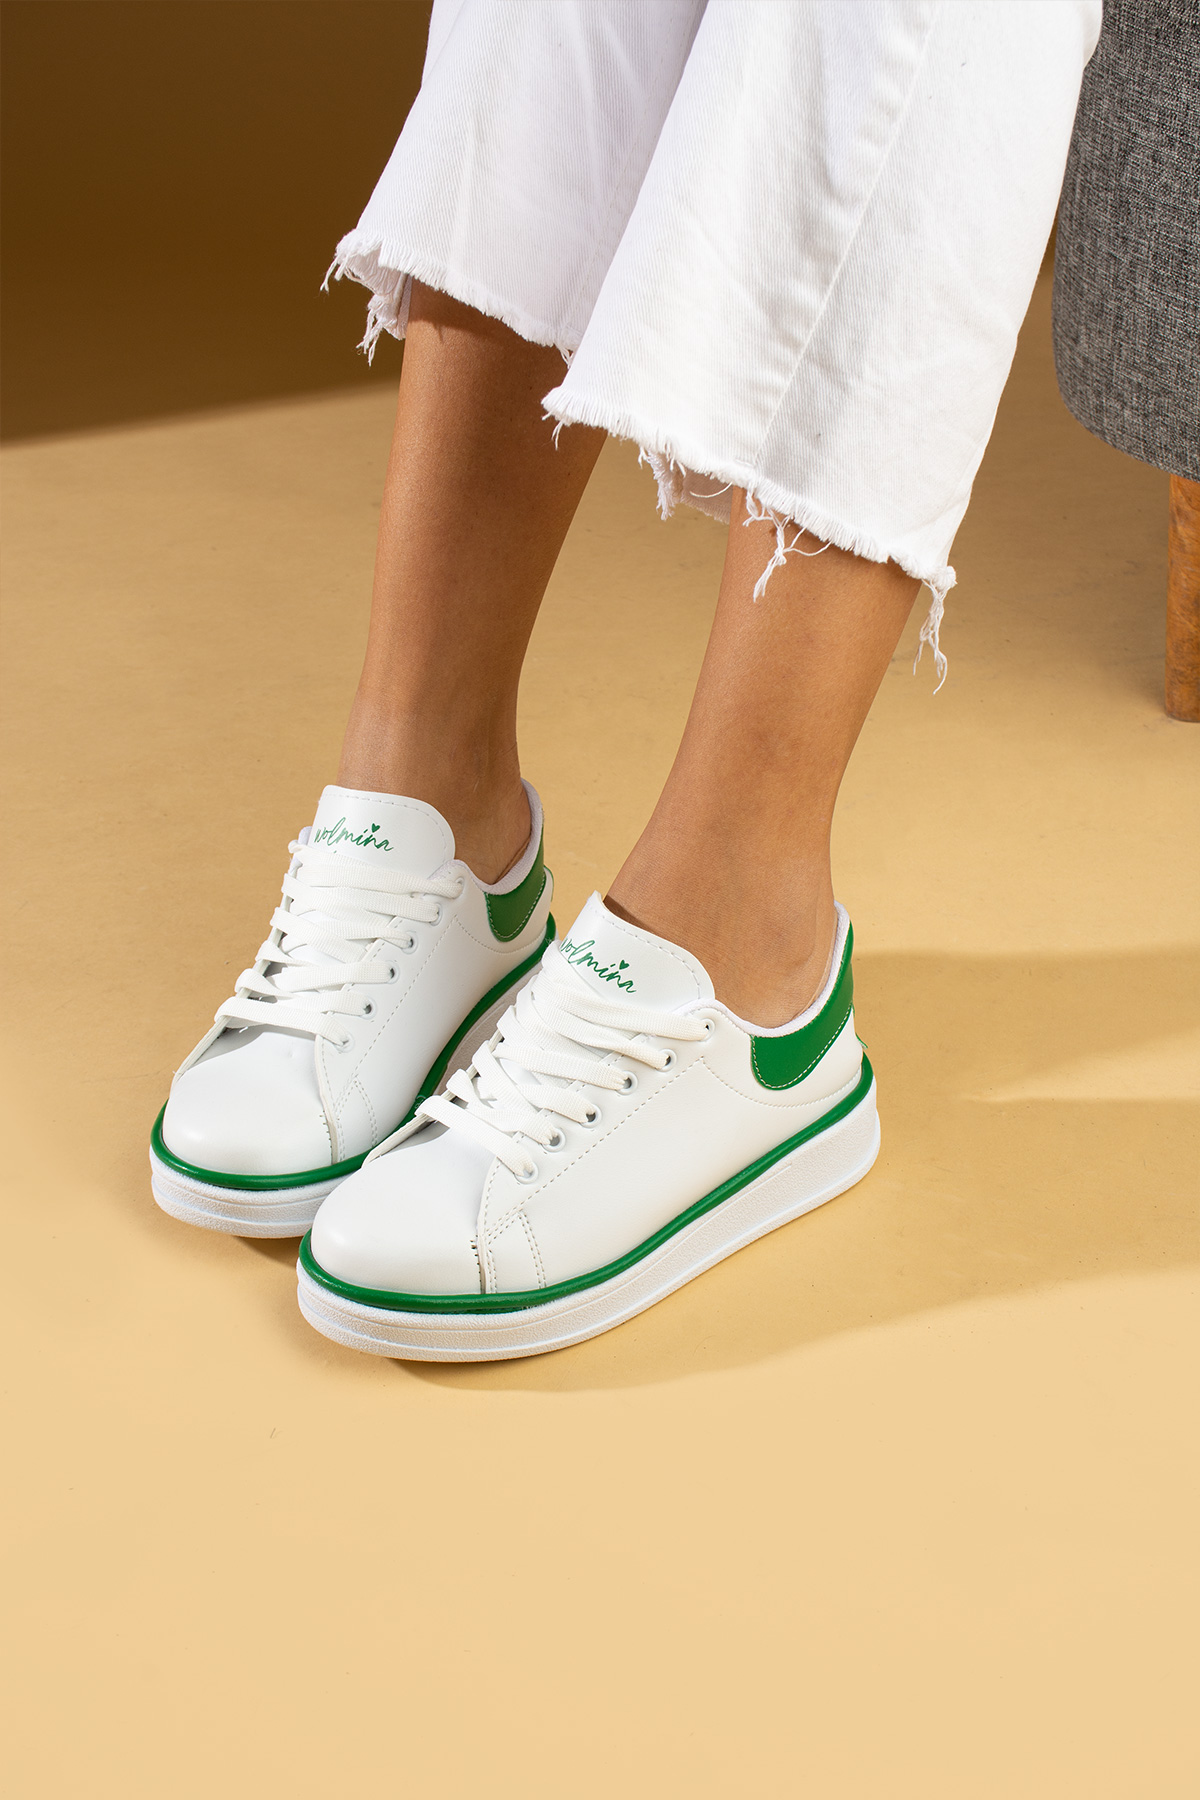 Pembe Potin Rahat Taban Renk Şeritli Bağcıklı Kadın Sneaker 001-340-24BYeşil - Beyaz